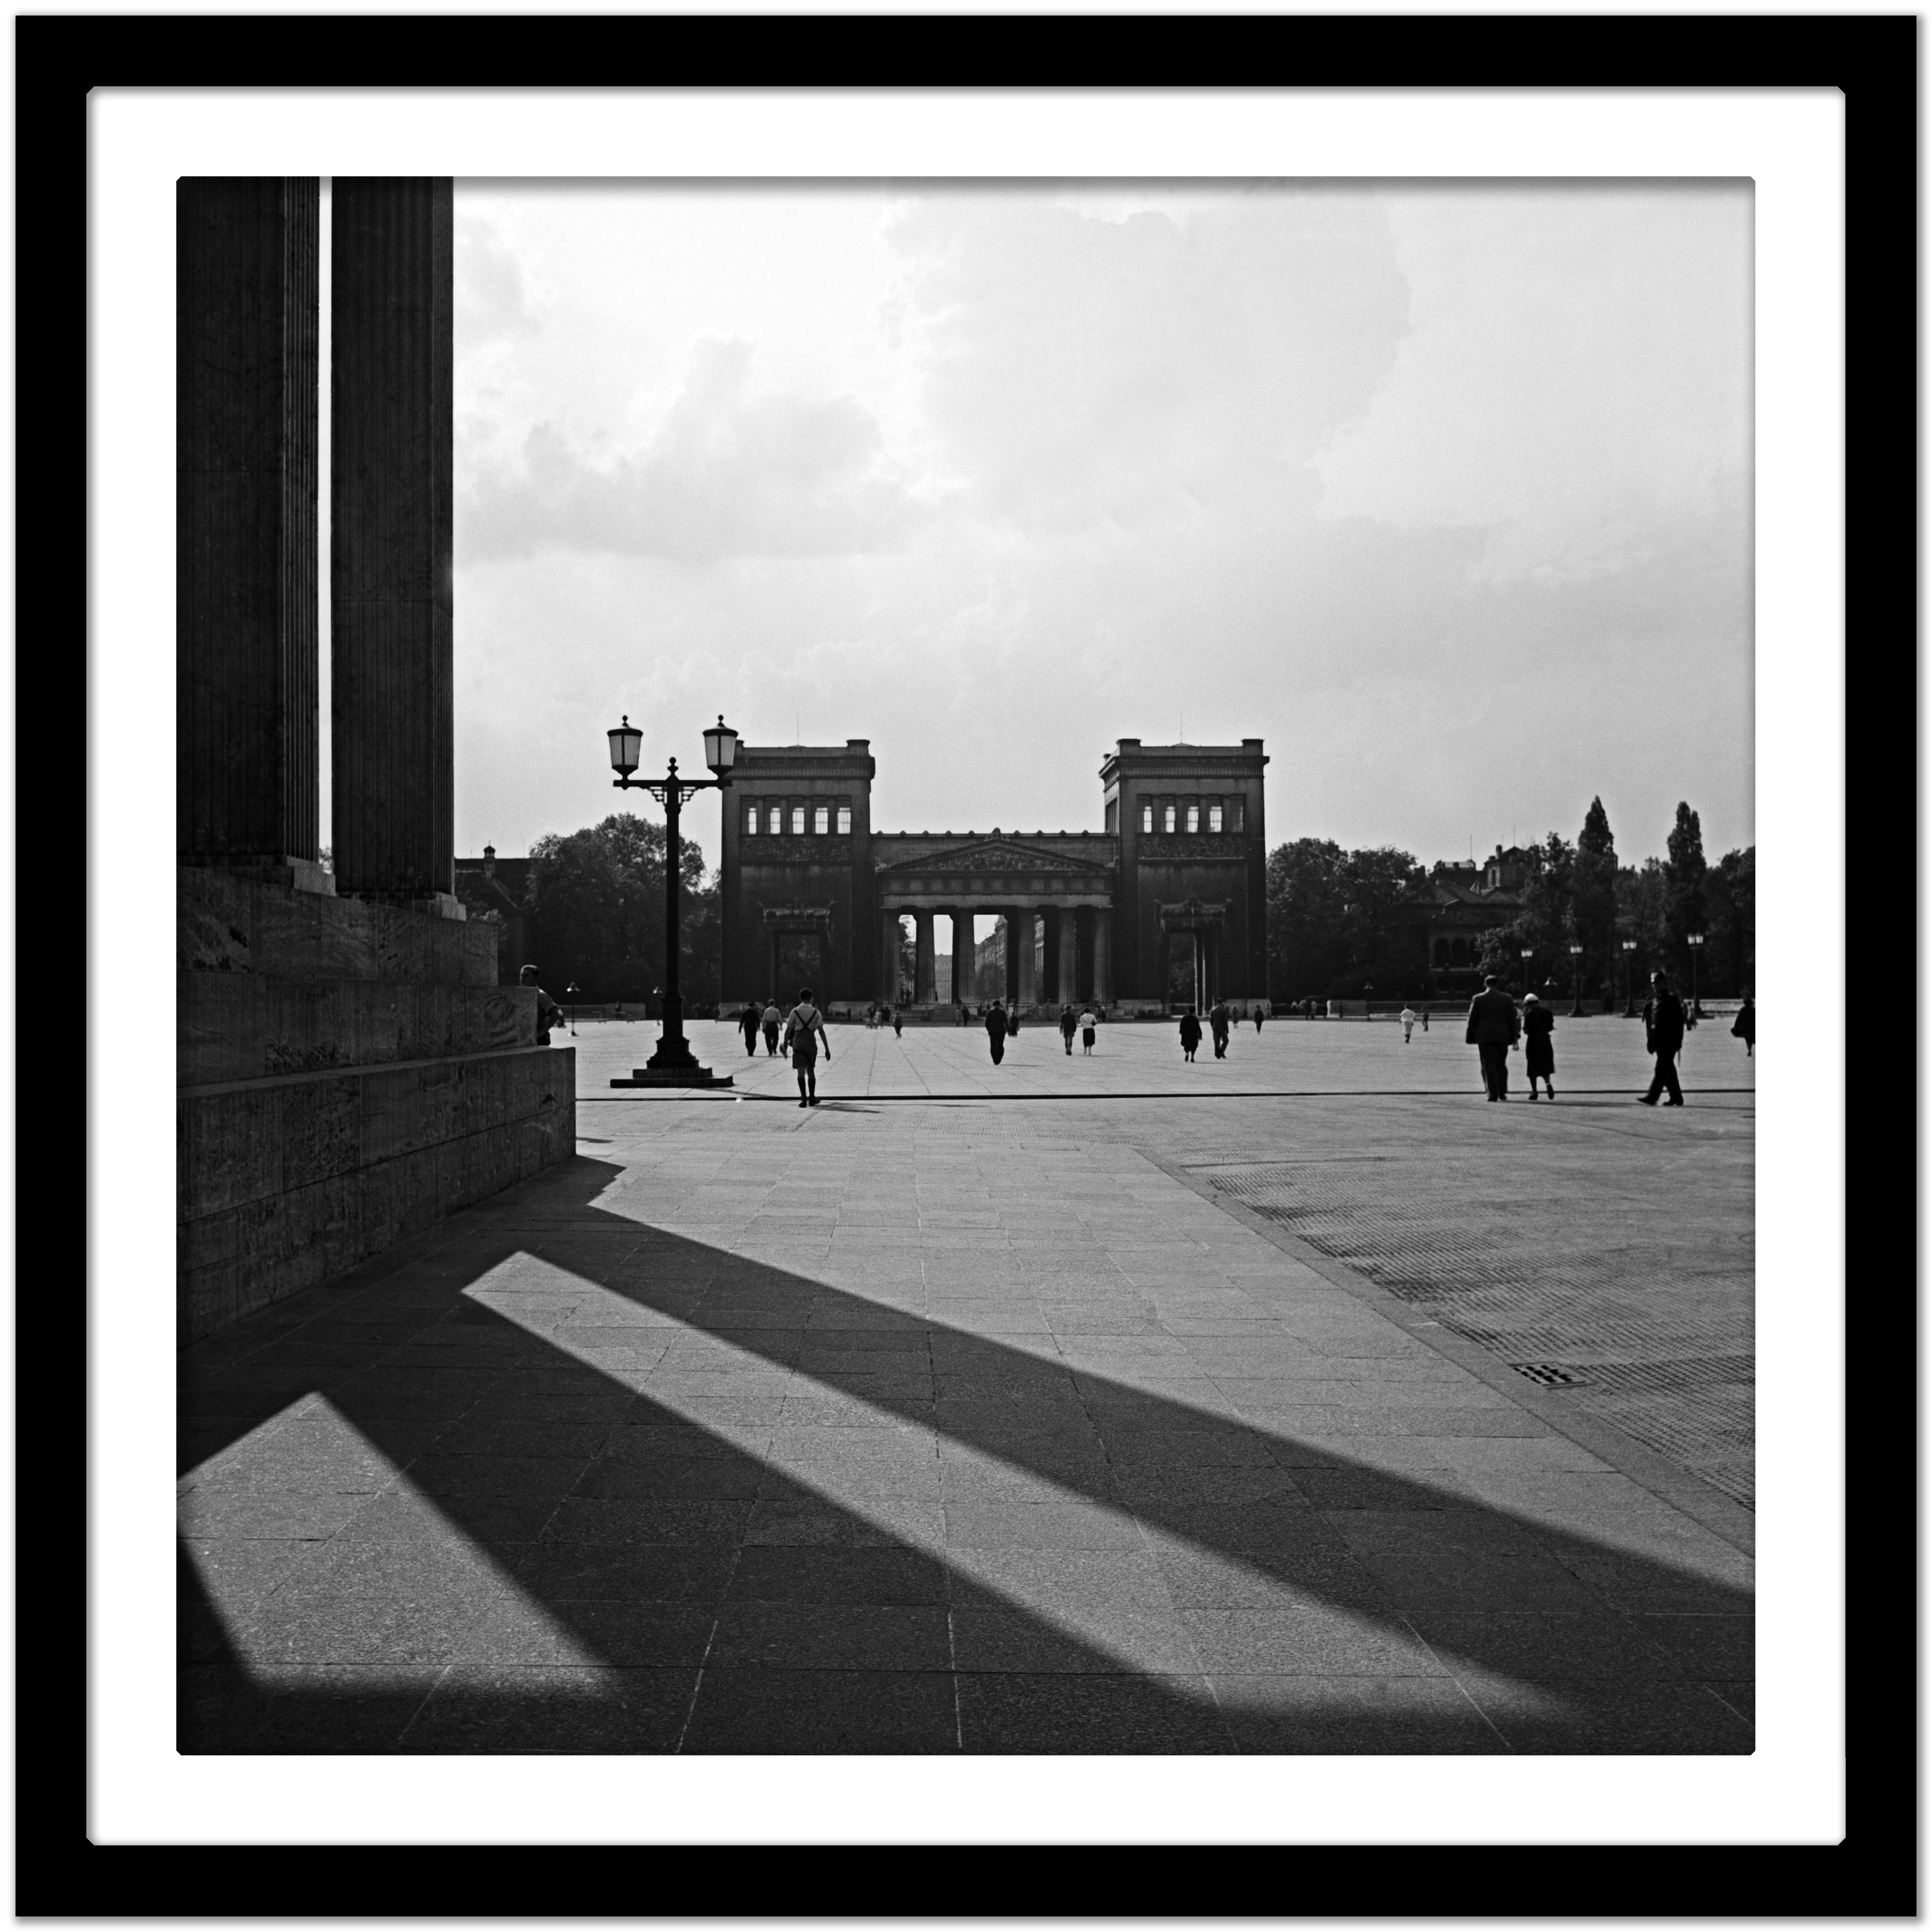 Sun, ombres, bâtiments carré Koenigsplatz Munich, Allemagne 1937, imprimé plus tard - Gris Black and White Photograph par Karl Heinrich Lämmel